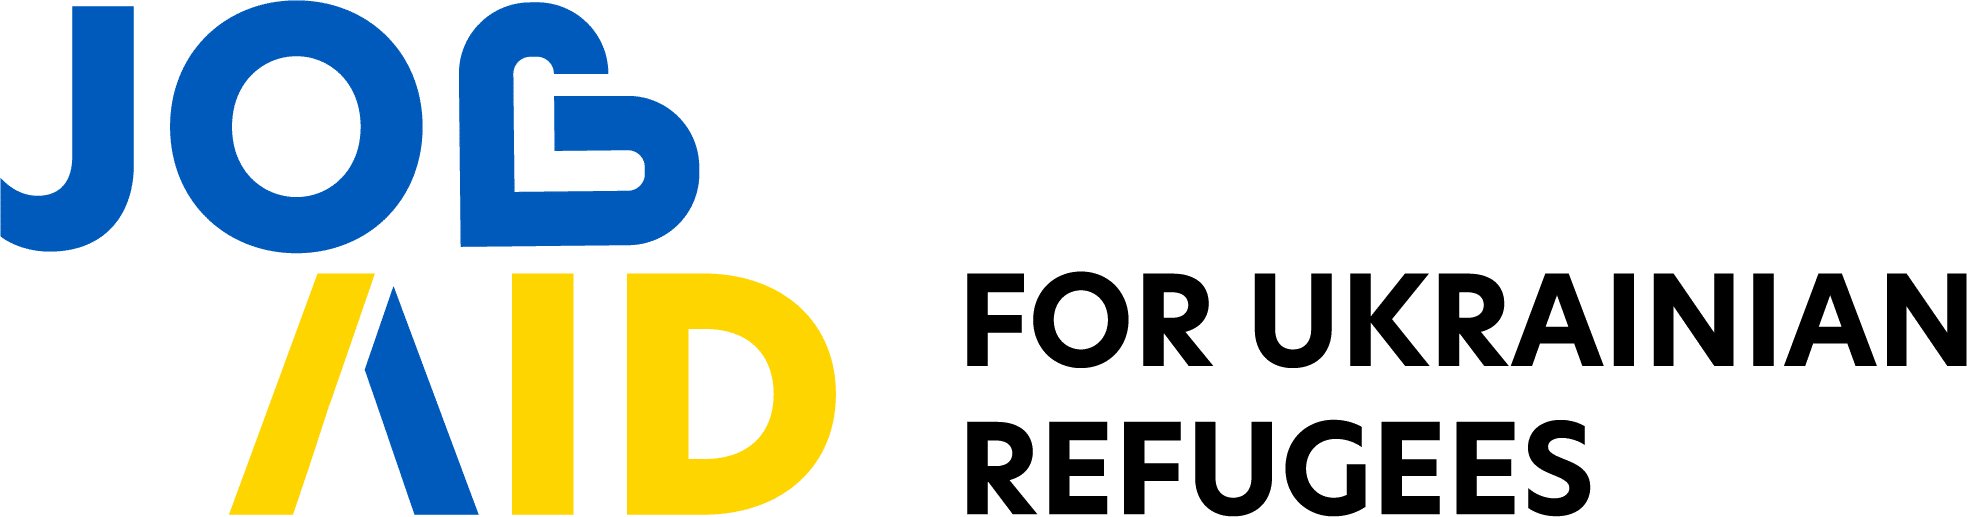 Job Aid for Ukrainian Refugees